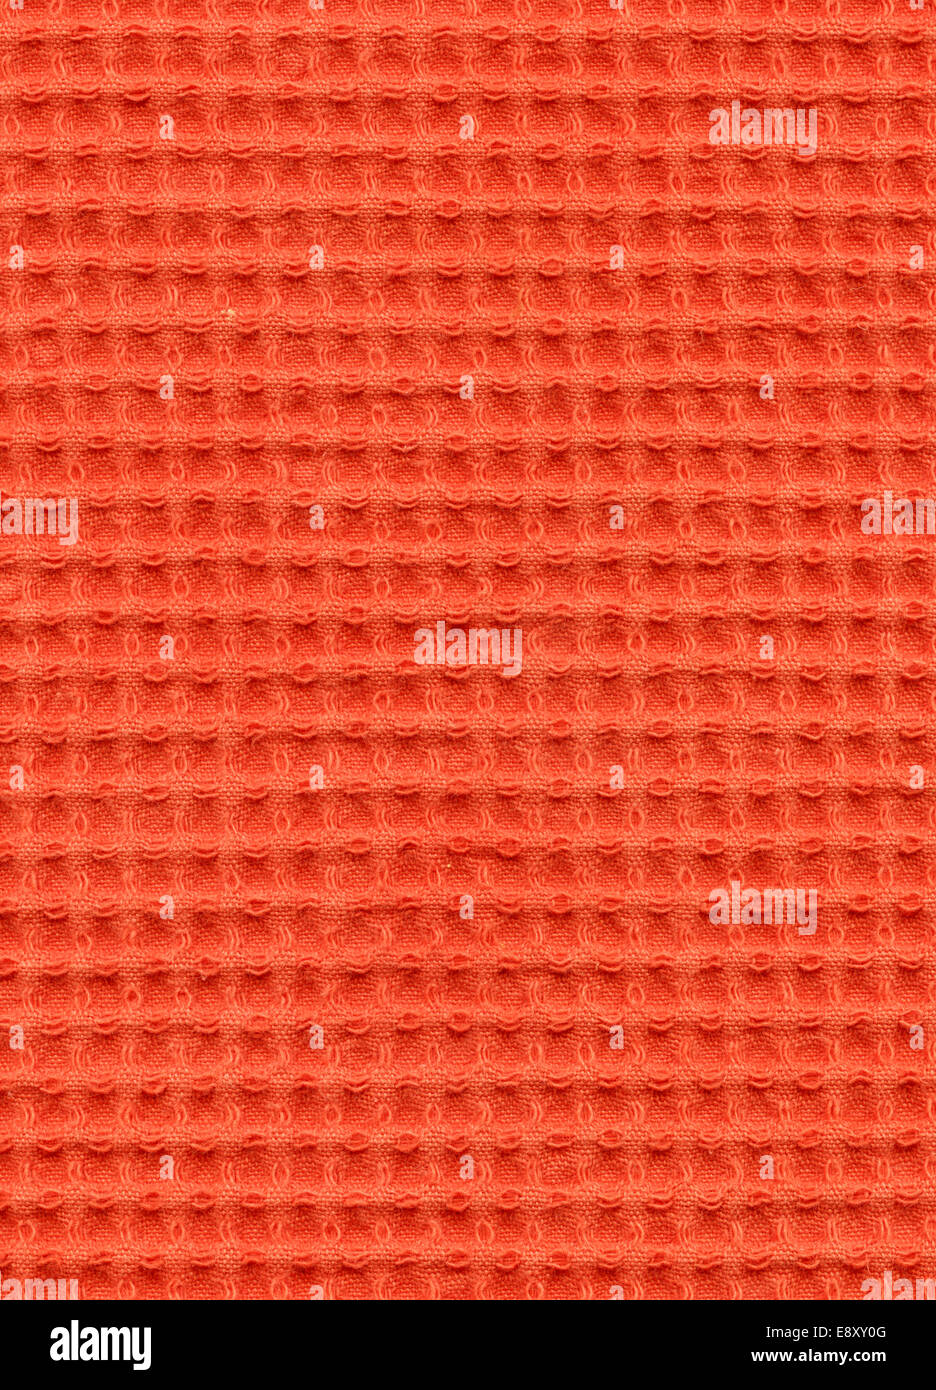 Fabric pattern Stock Photo